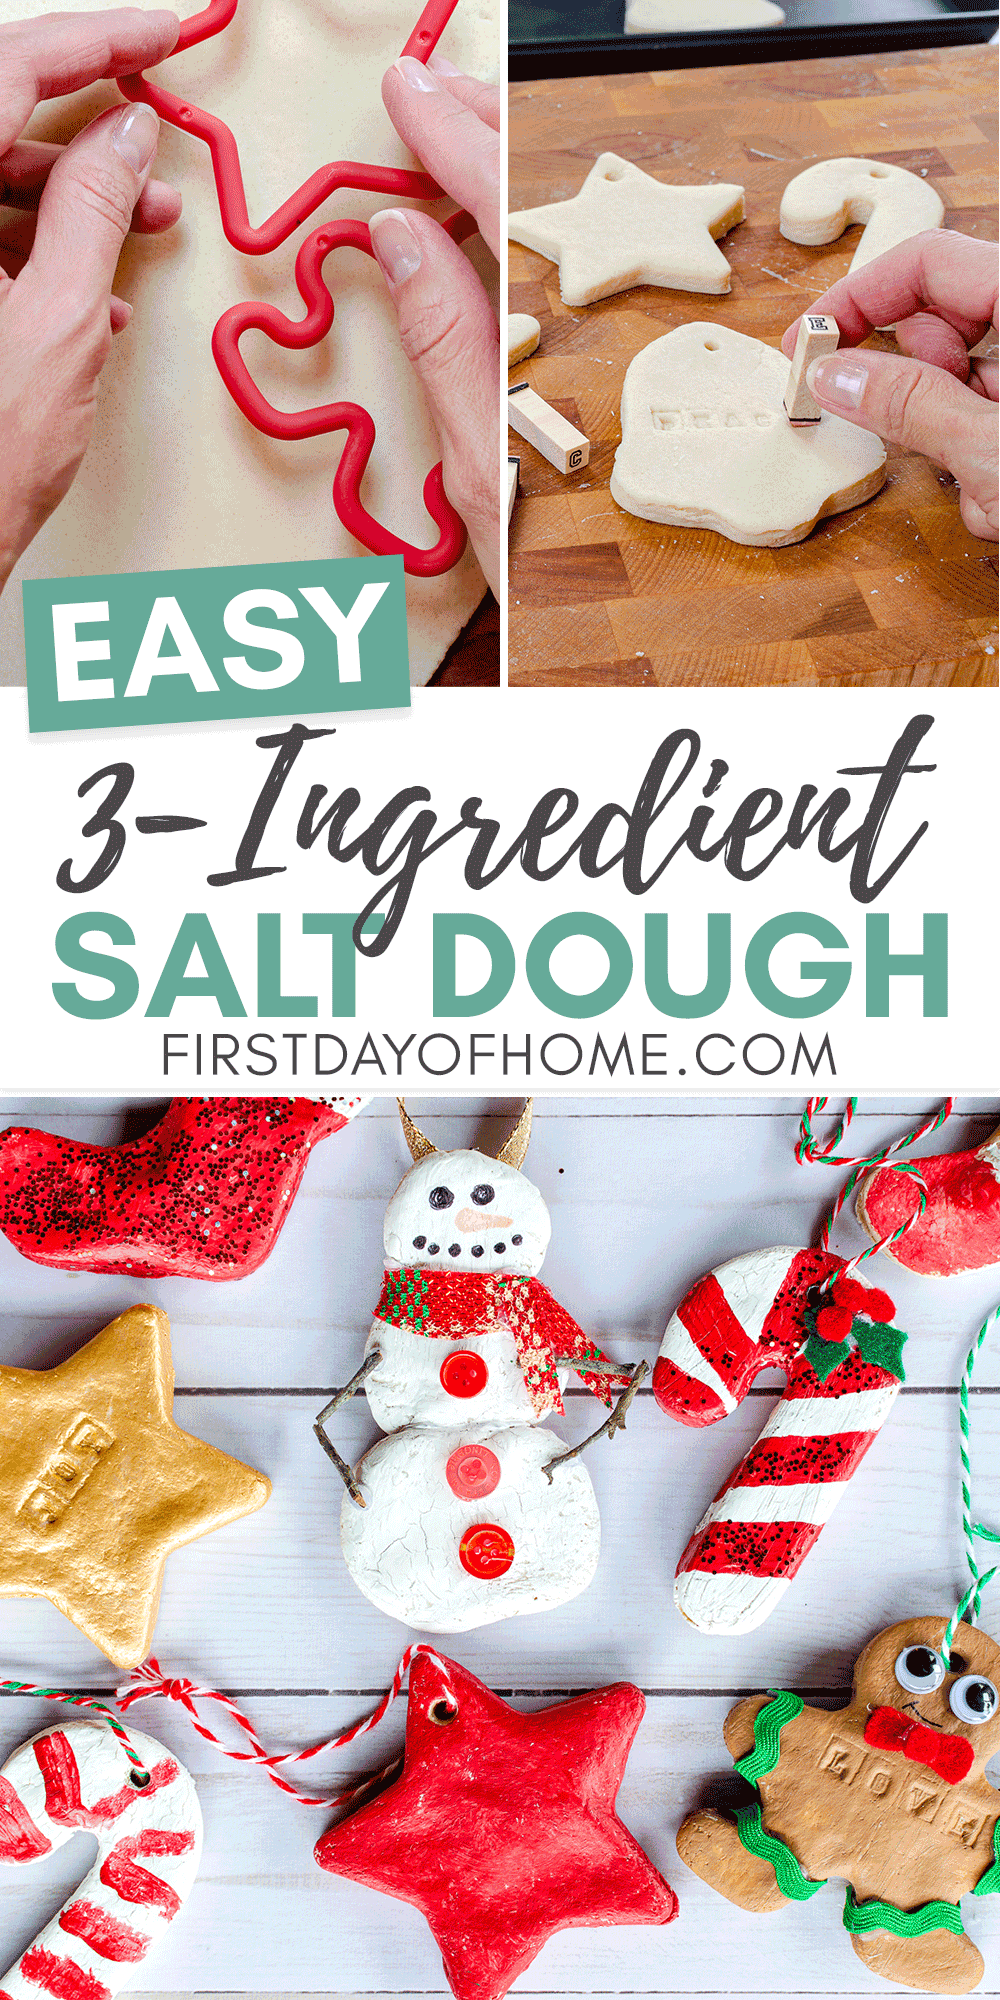 How to Make Salt Dough Ornaments the Kids Will Love -   19 holiday Art salt dough ideas